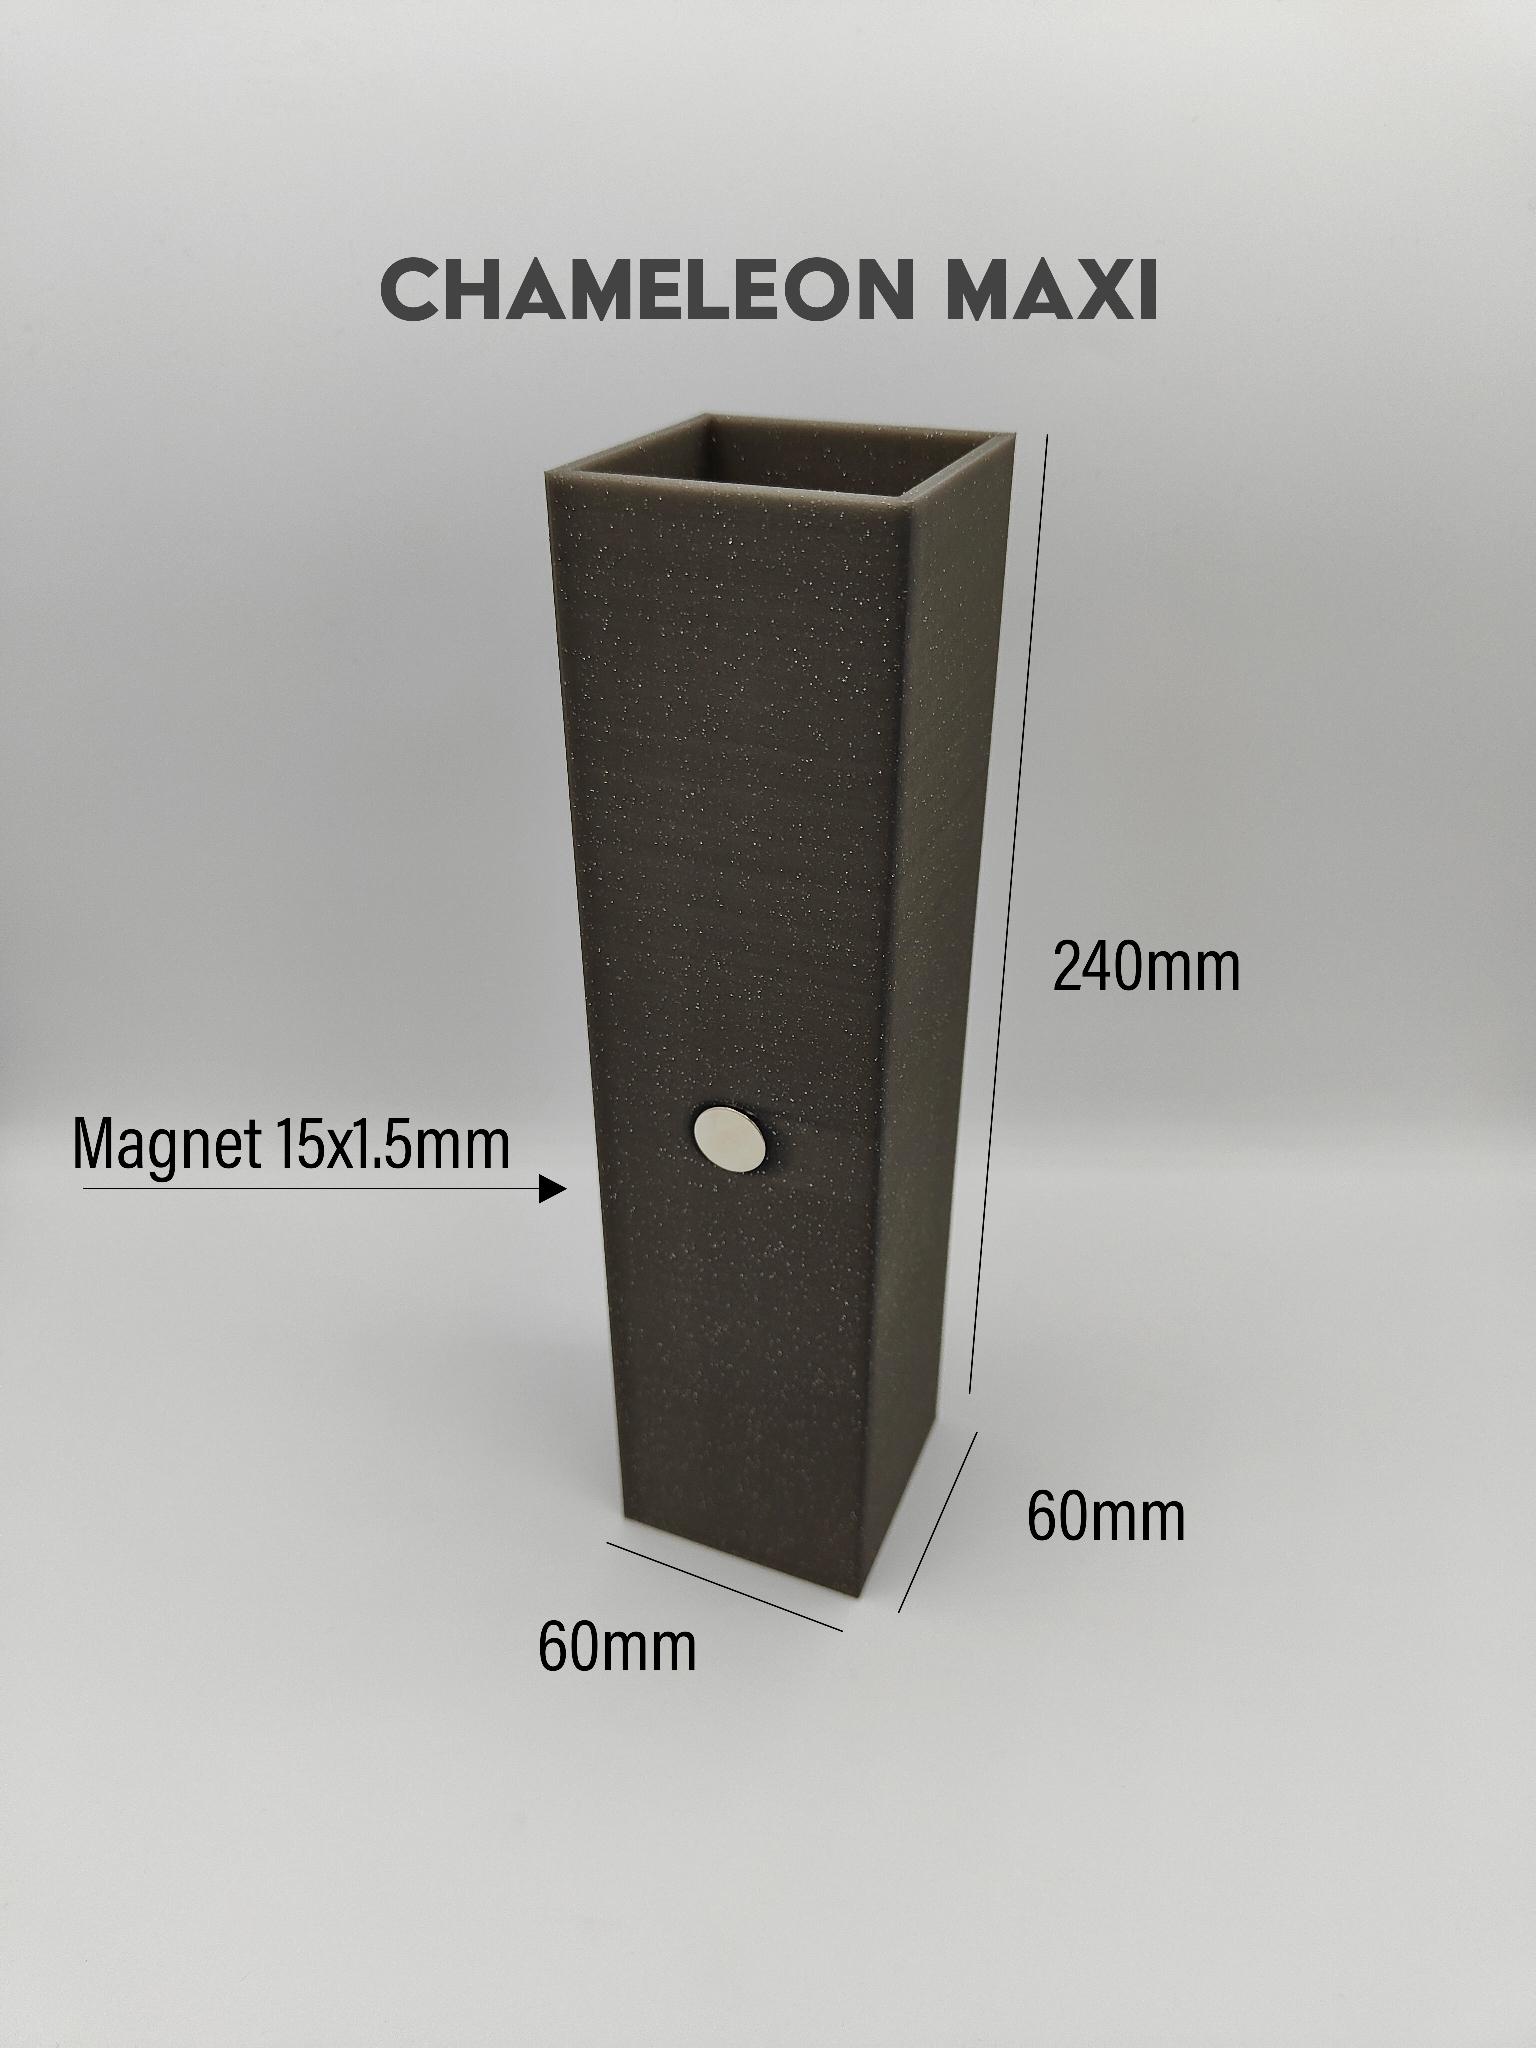 Chameleon Maxi - Vase 3d model